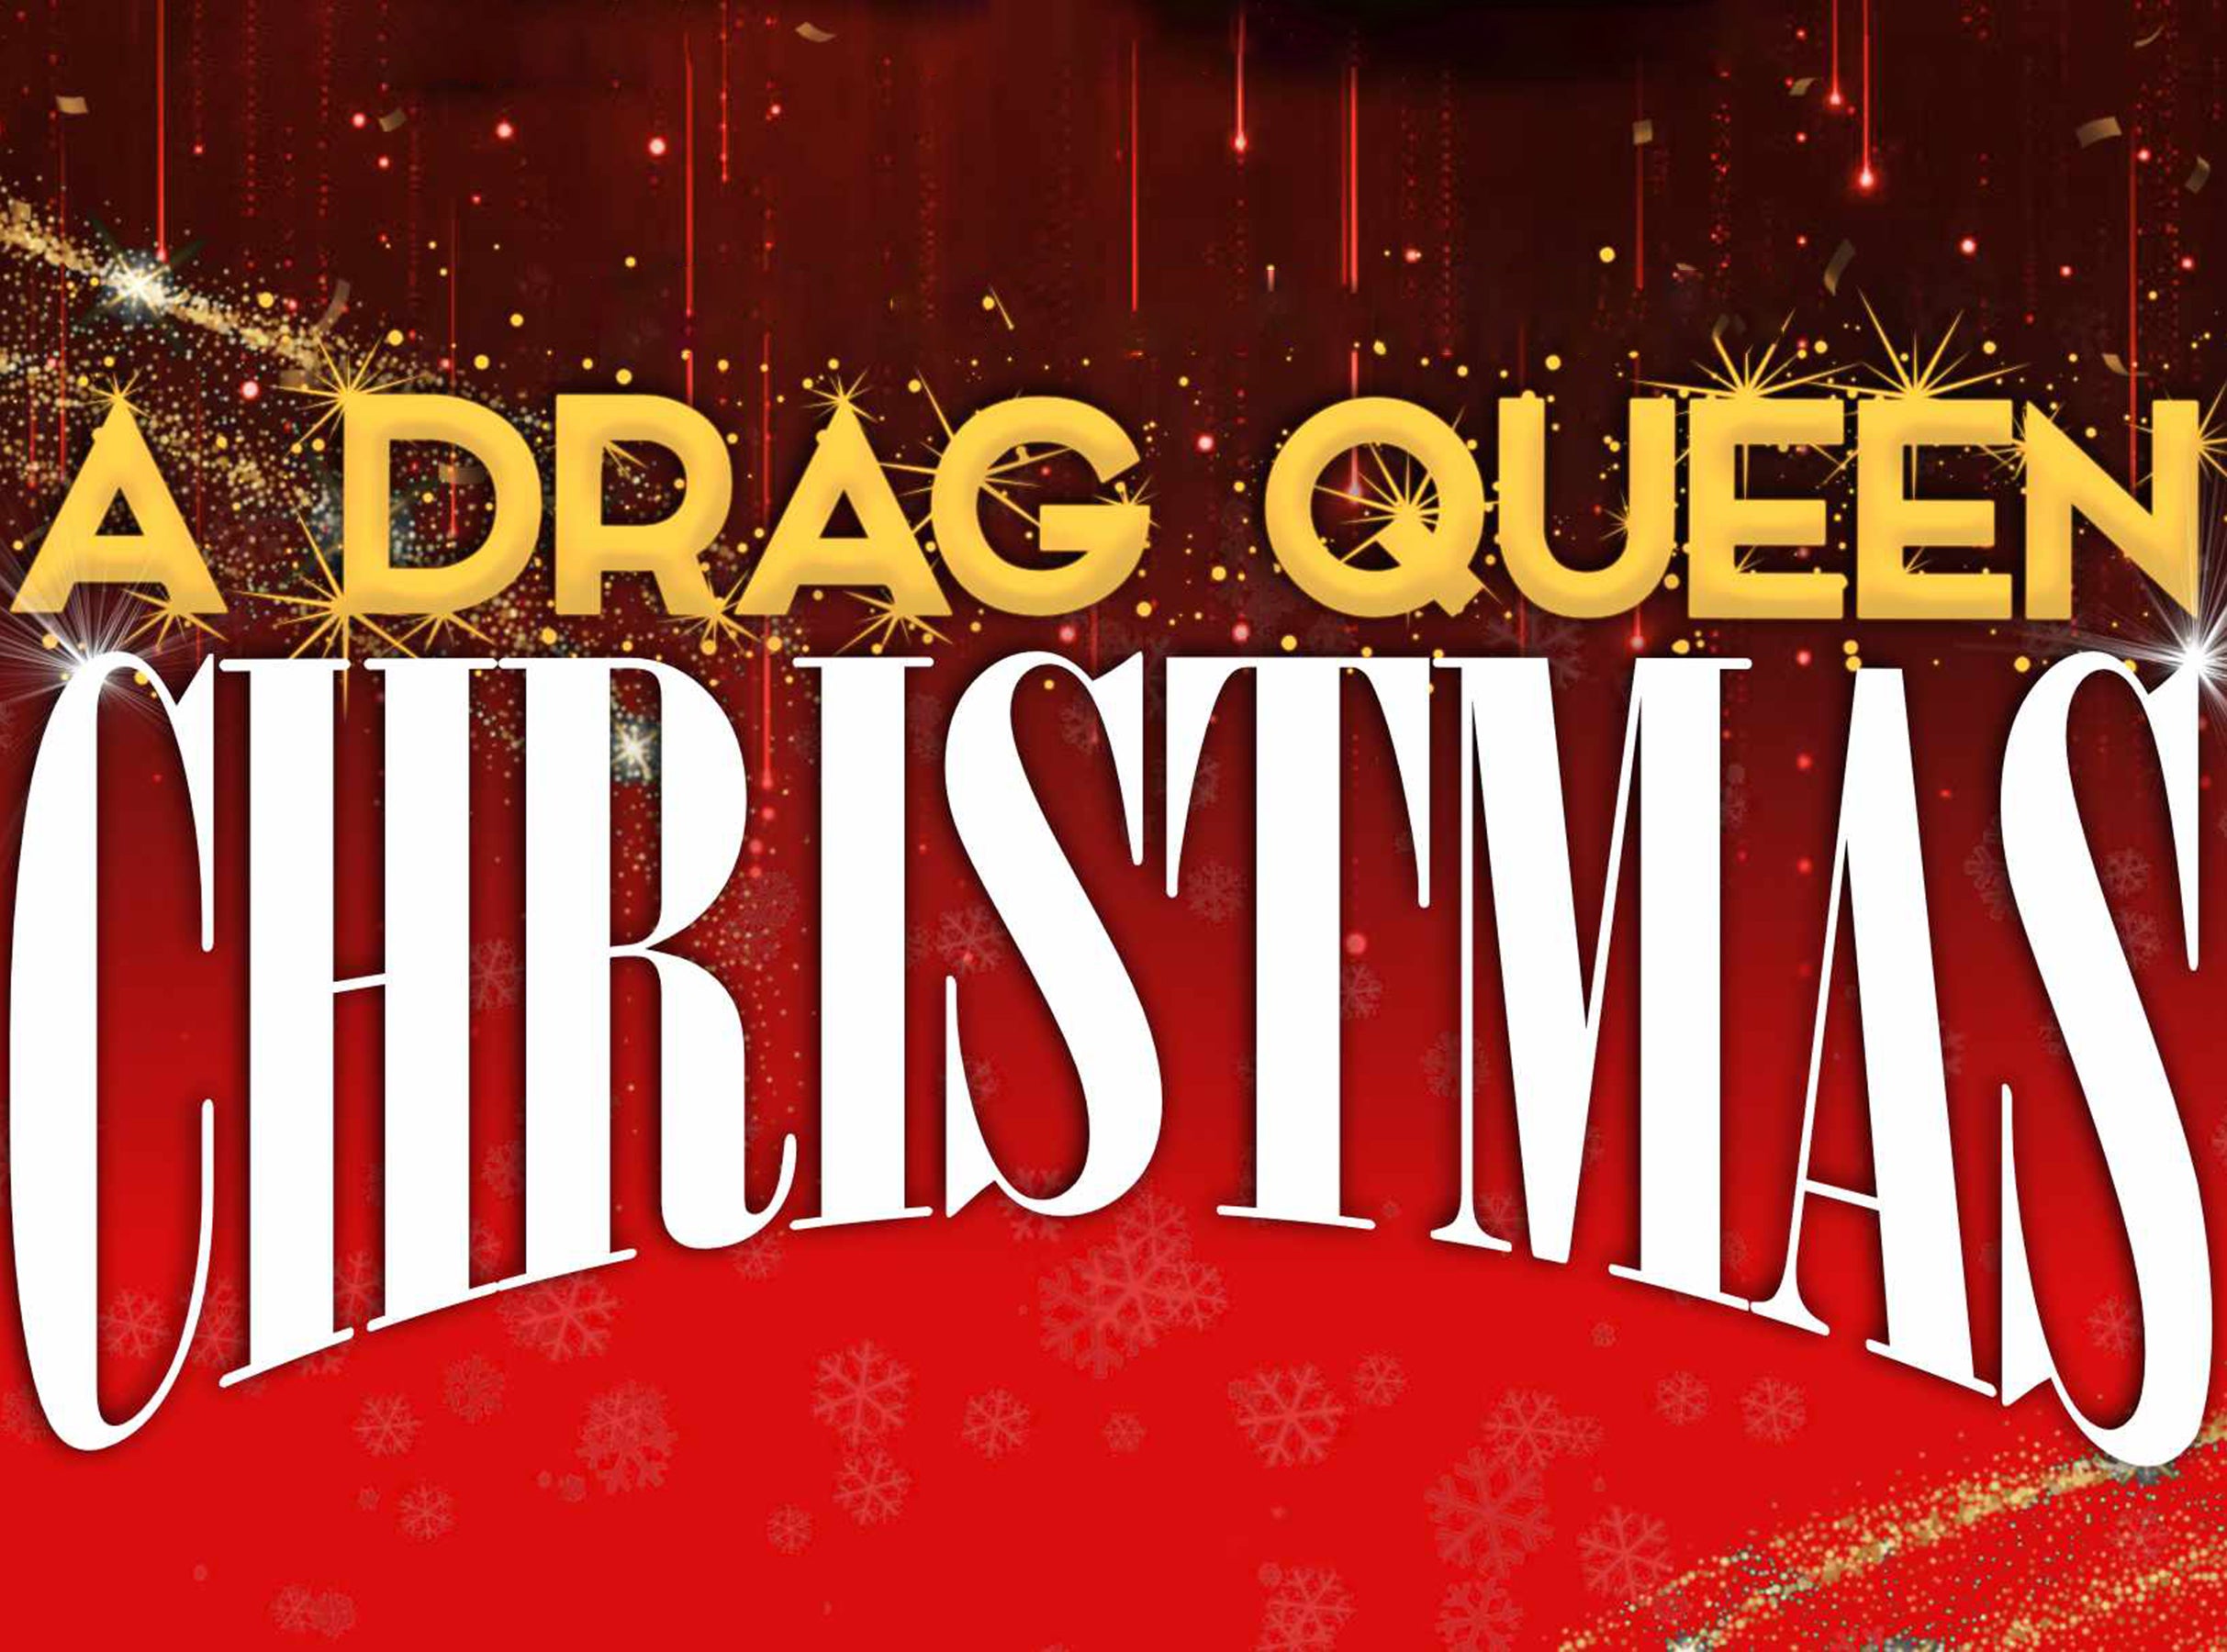 A Drag Queen Christmas pre-sale passcode